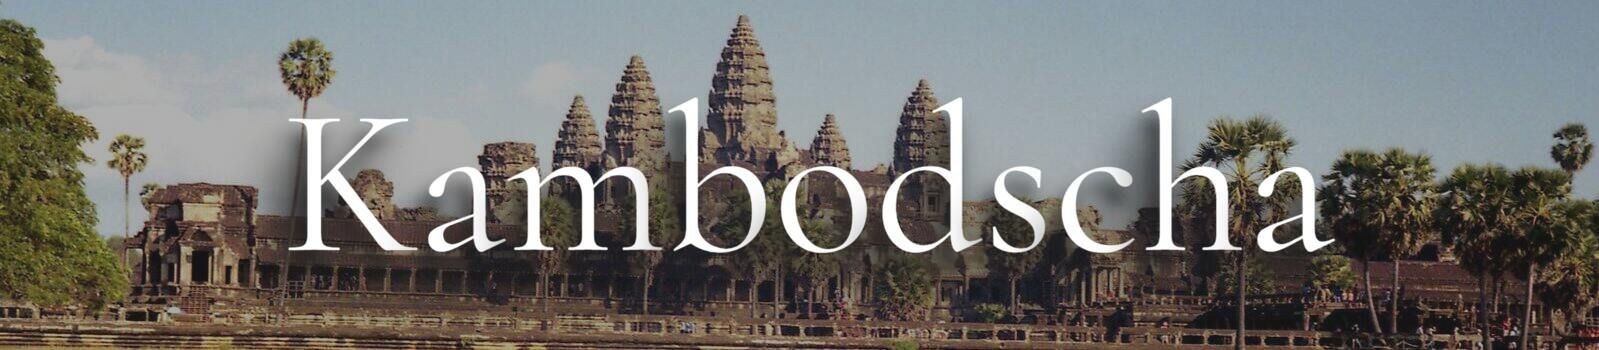 Kambodscha Banner